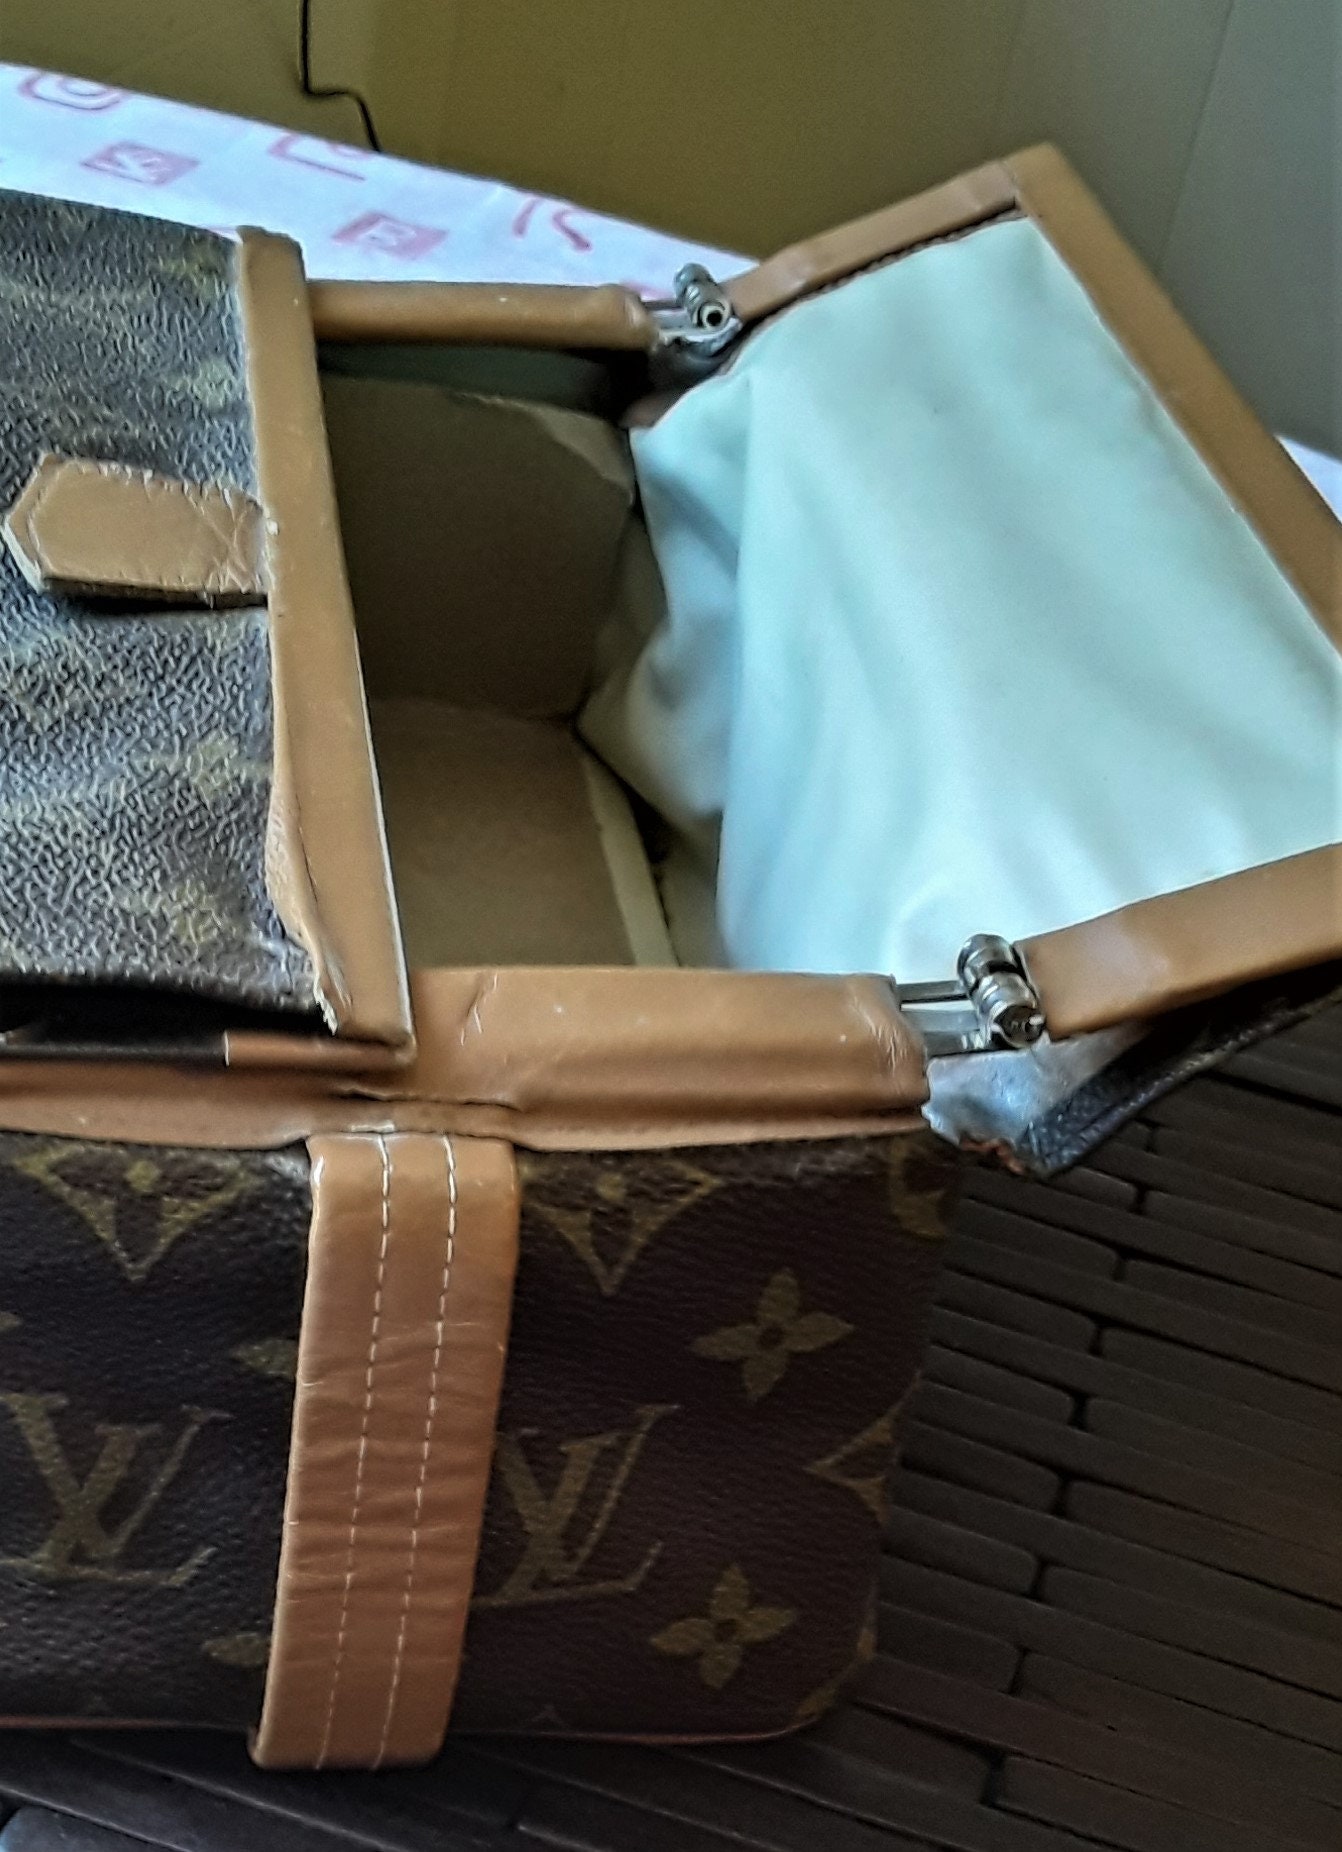 Lot - Vintage Louis Vuitton hardcase and toiletry bag (2pcs)